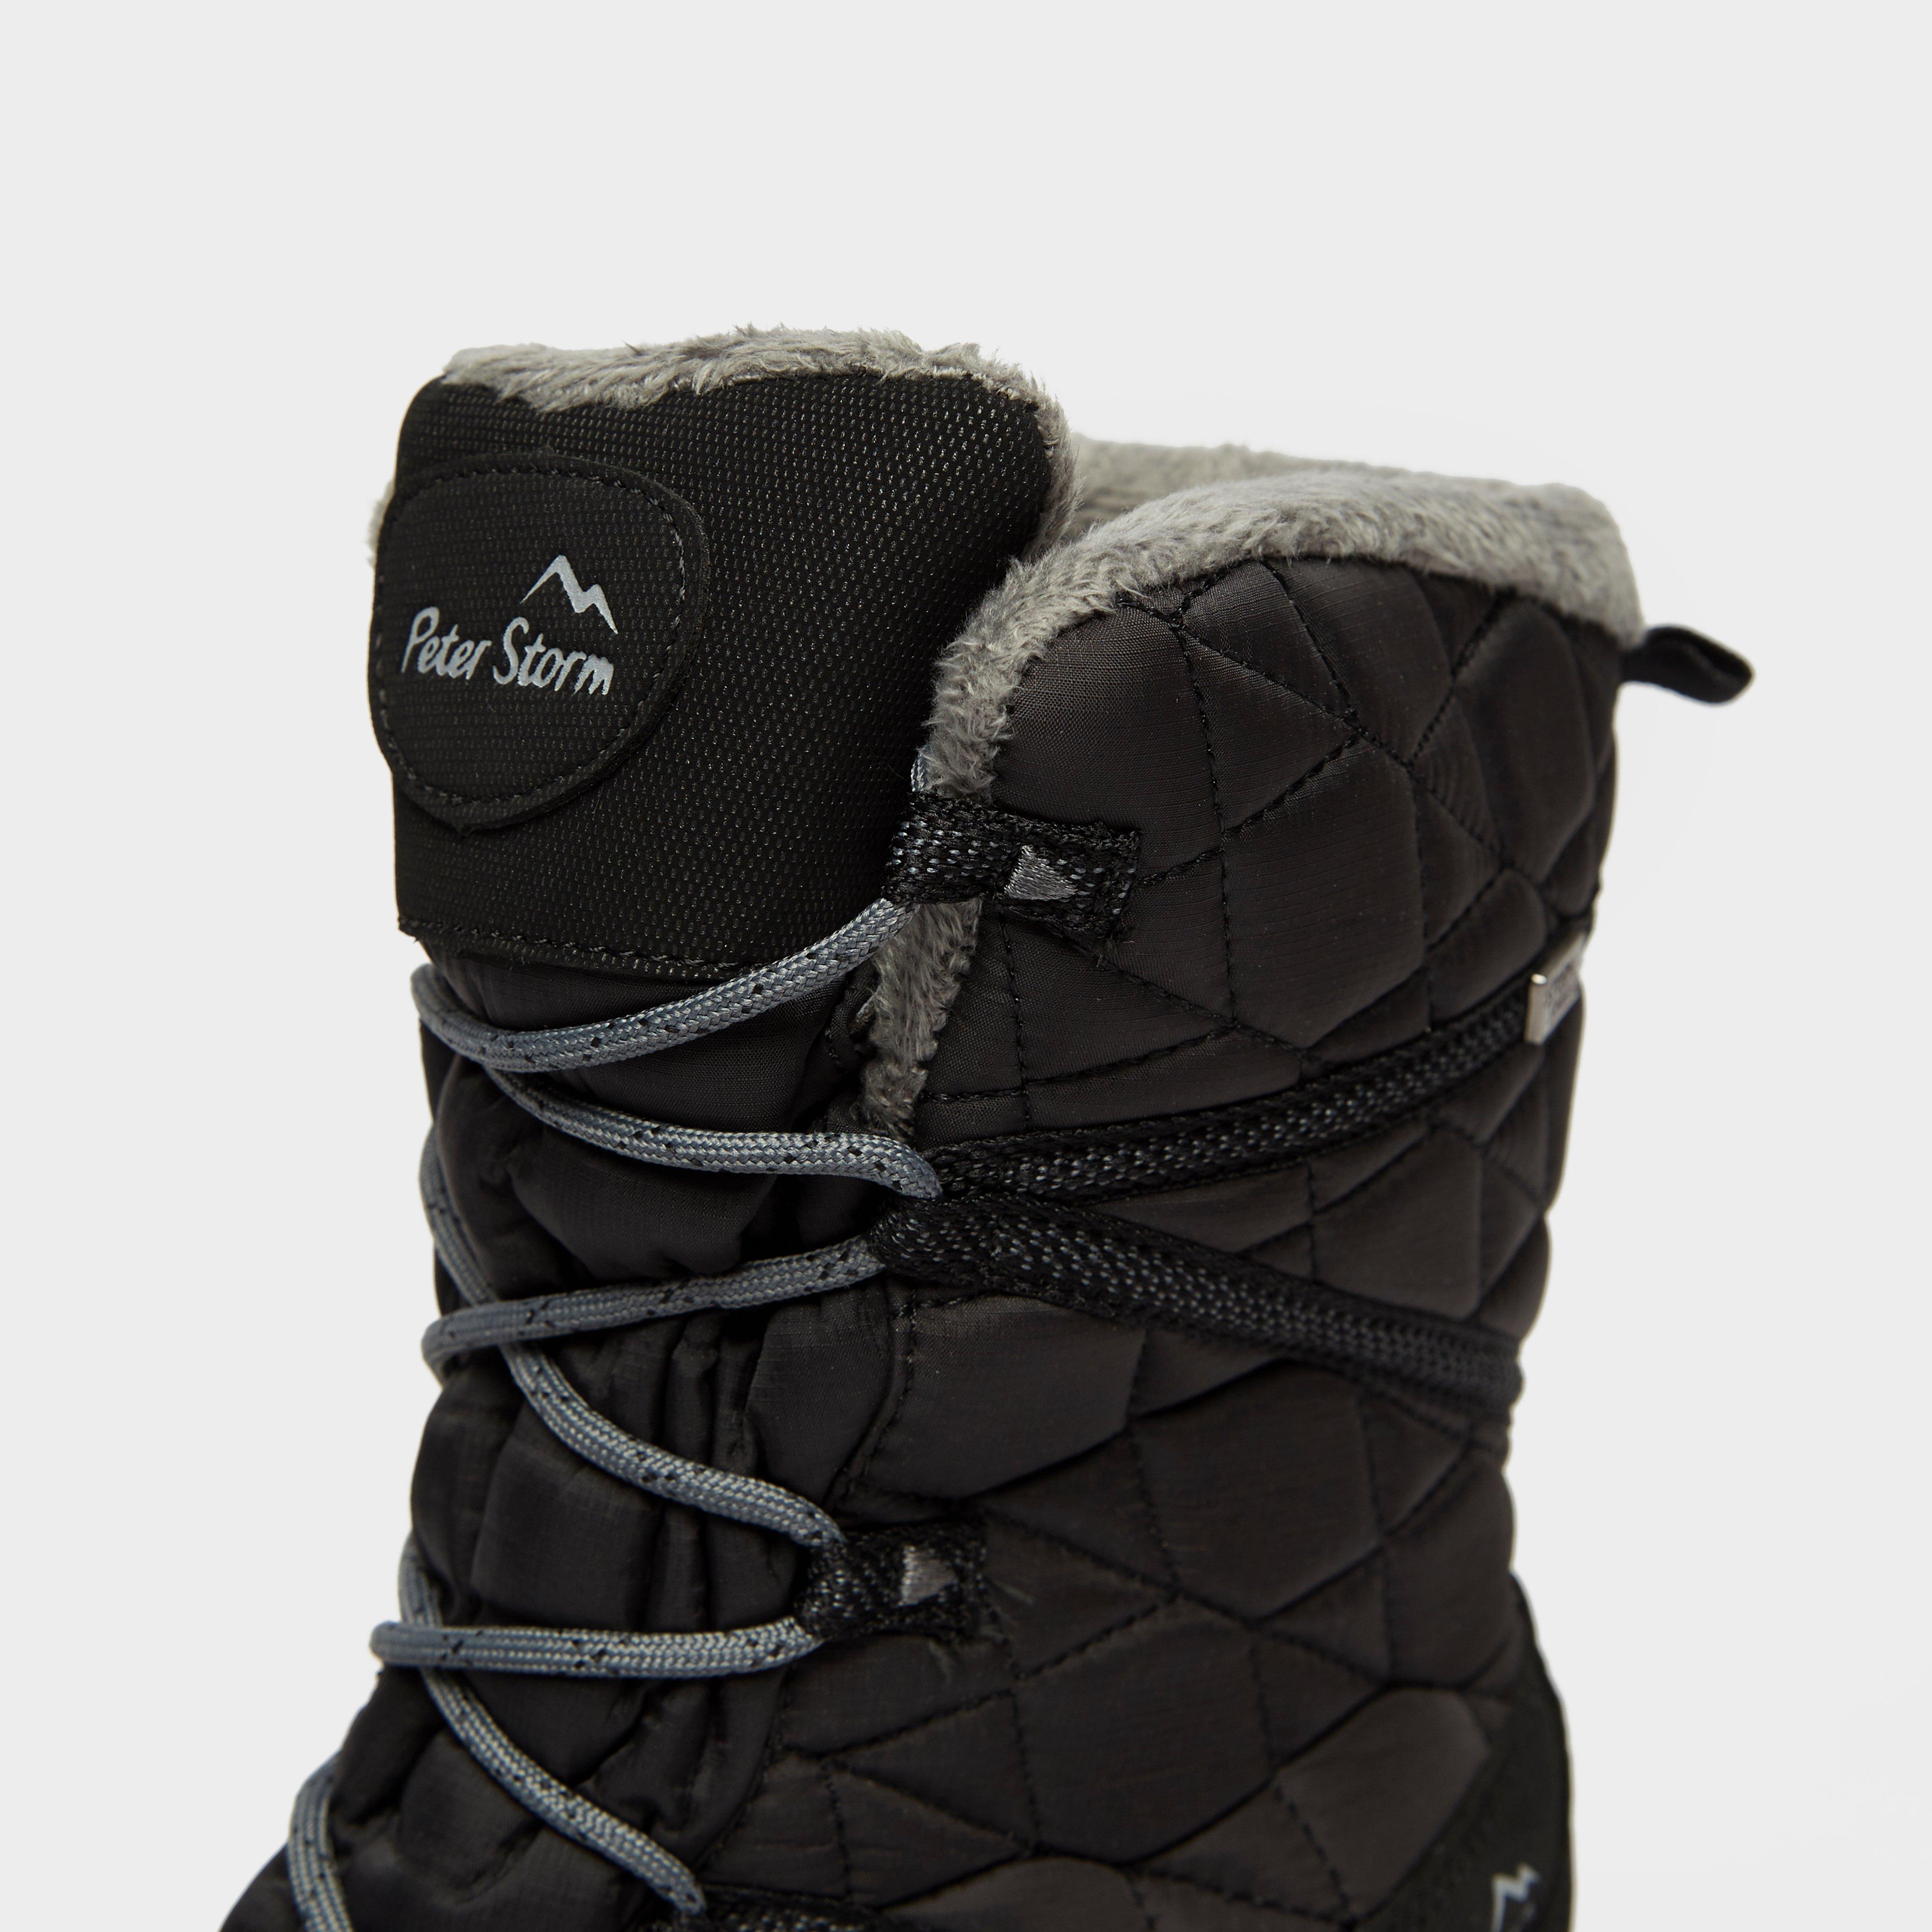 New Peter Storm Women’s Snowdrop Waterproof Walking Boot